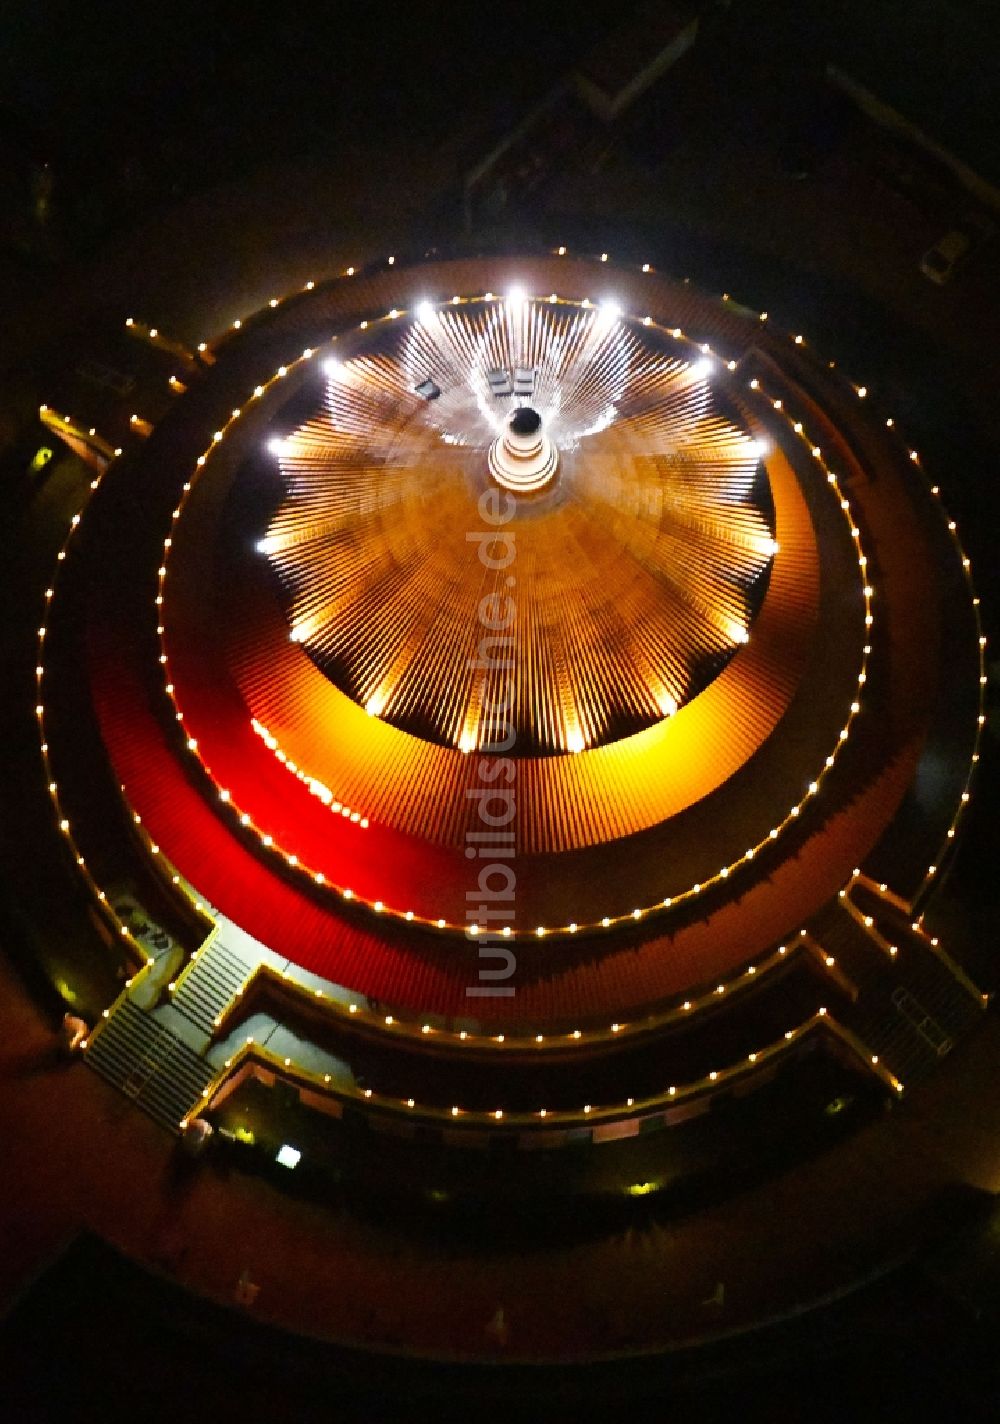 Nacht-Luftaufnahme Hohen Neuendorf - Nachtluftbild Gebäude des Restaurant Himmelspagode in Hohen Neuendorf im Bundesland Brandenburg, Deutschland